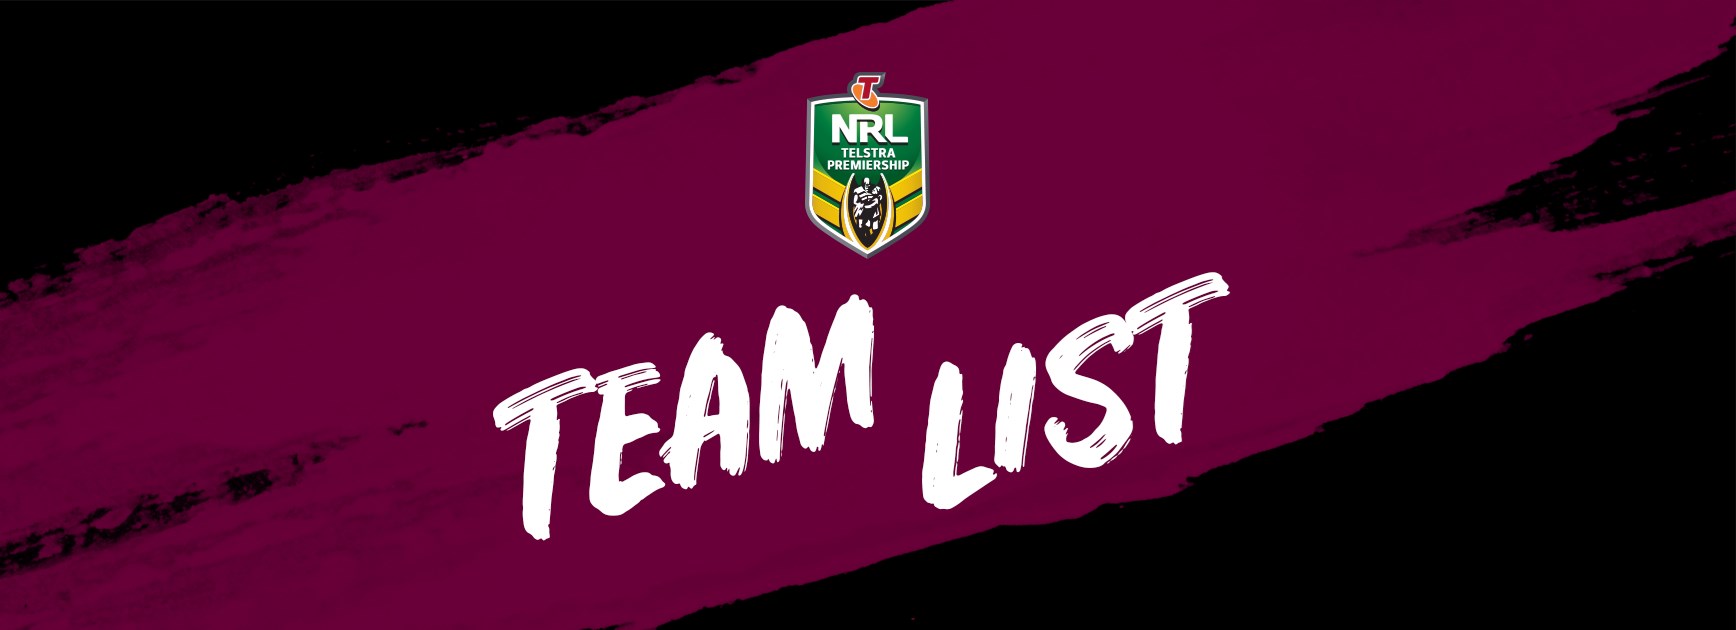 NRL Team List - Round 15